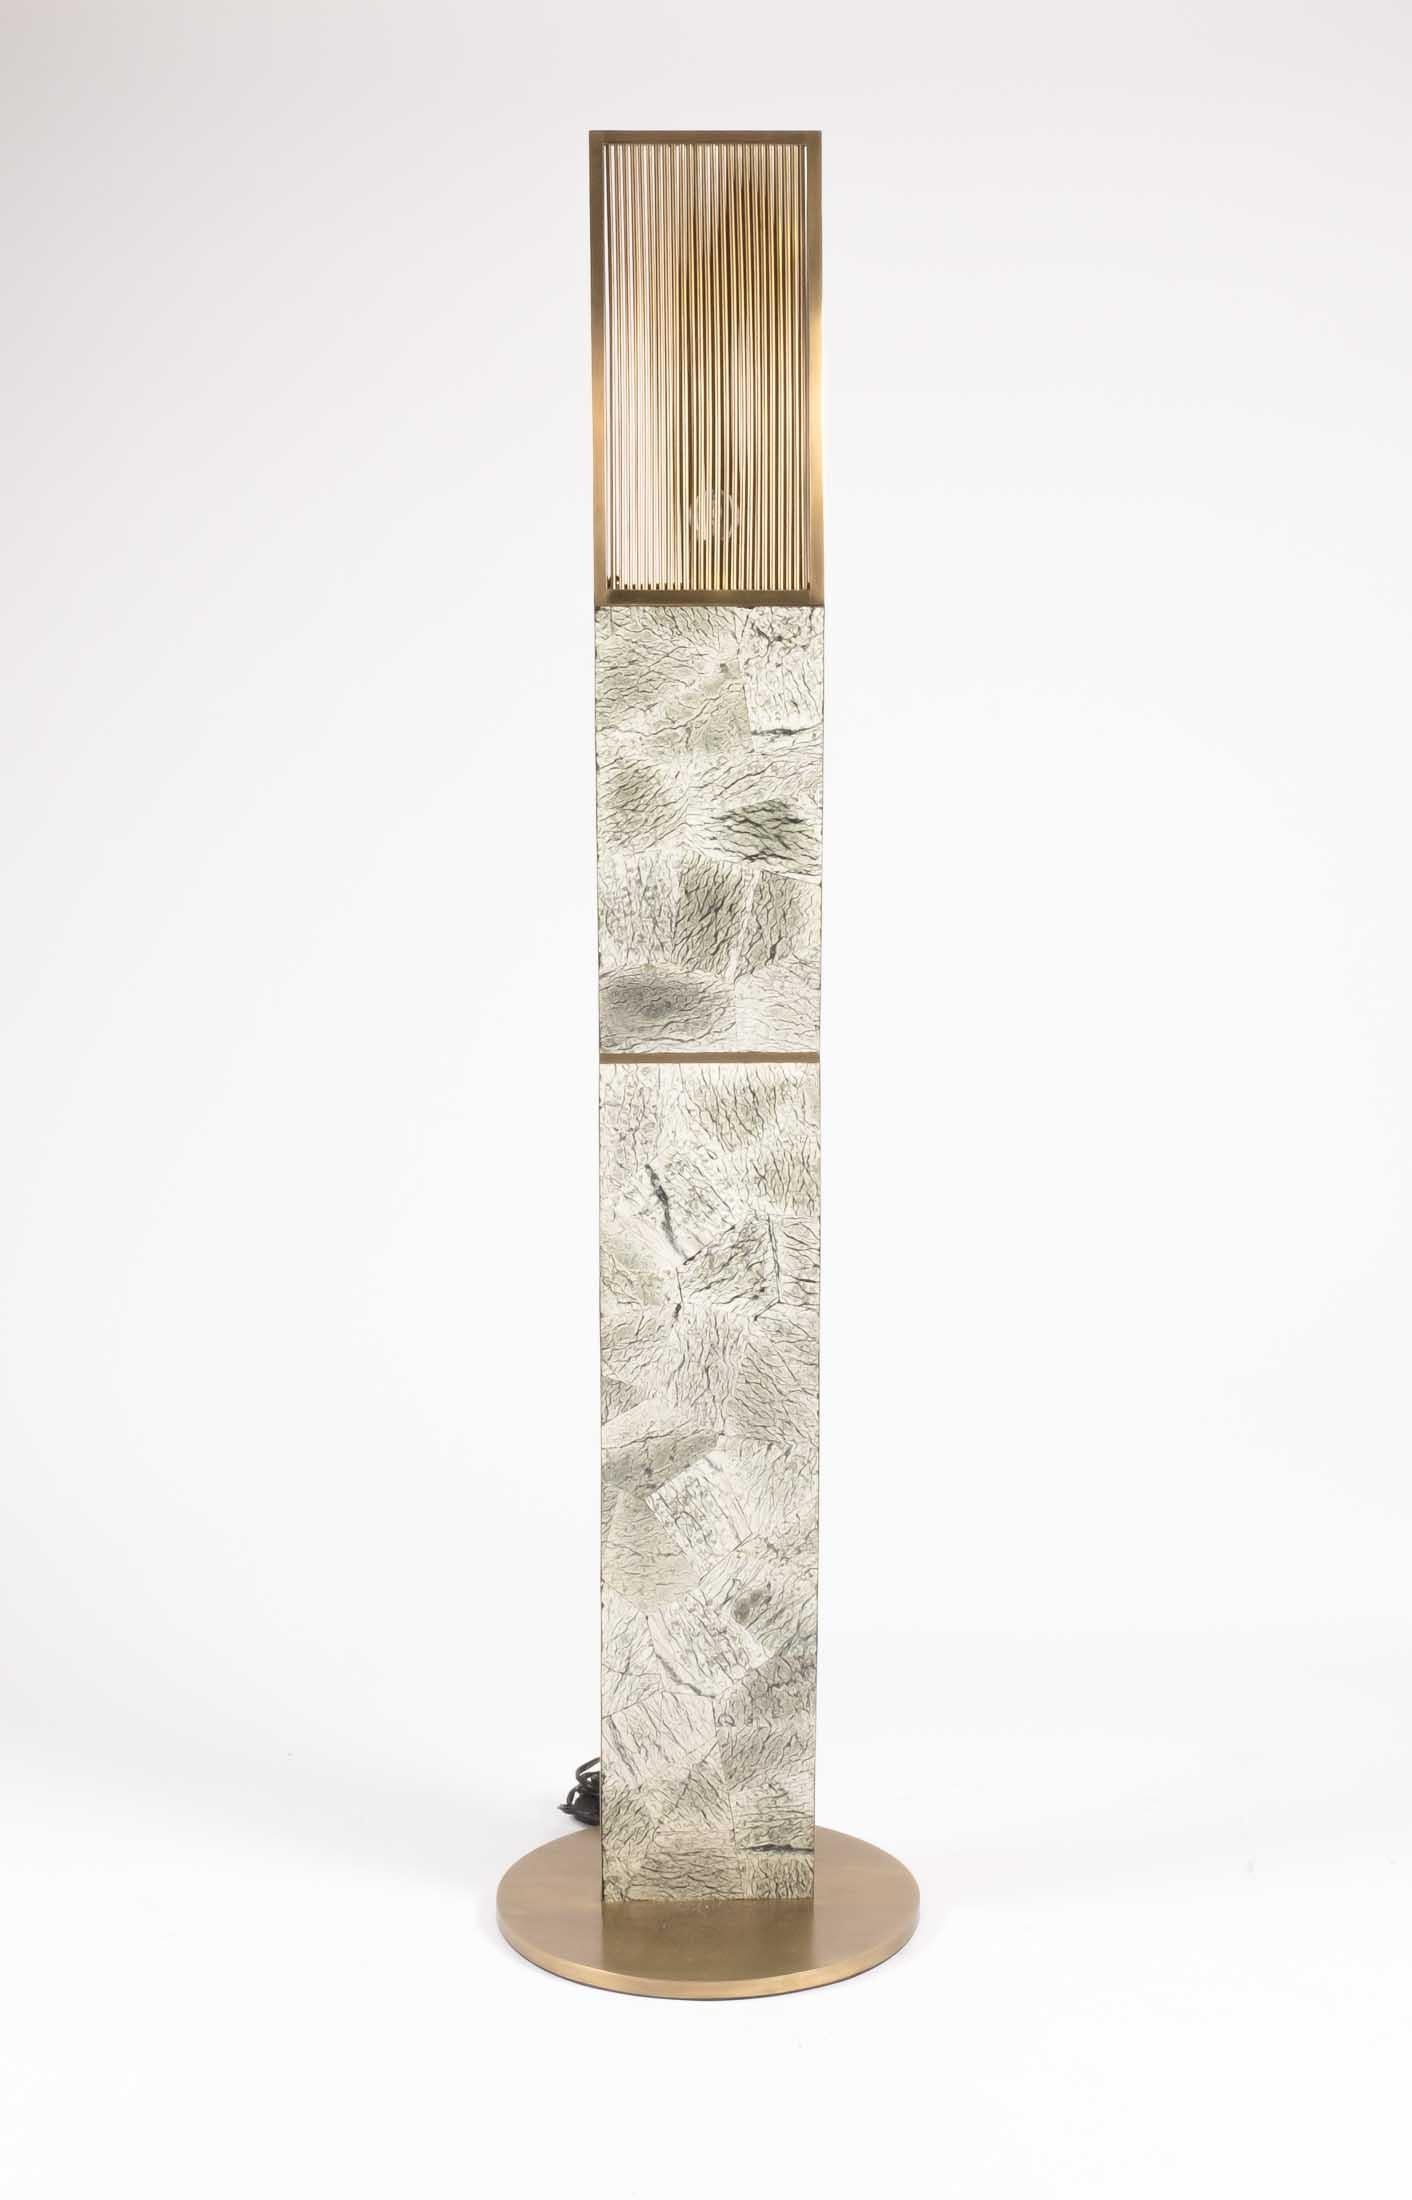 Le lampadaire à hélice Kifu Paris en pierre de Baguio est une pièce d'éclairage sculpturale et existe en deux autres tailles vendues séparément (images à la fin de la diapositive). Les couleurs de la pierre de Baguio sont dans des tonalités de vert,